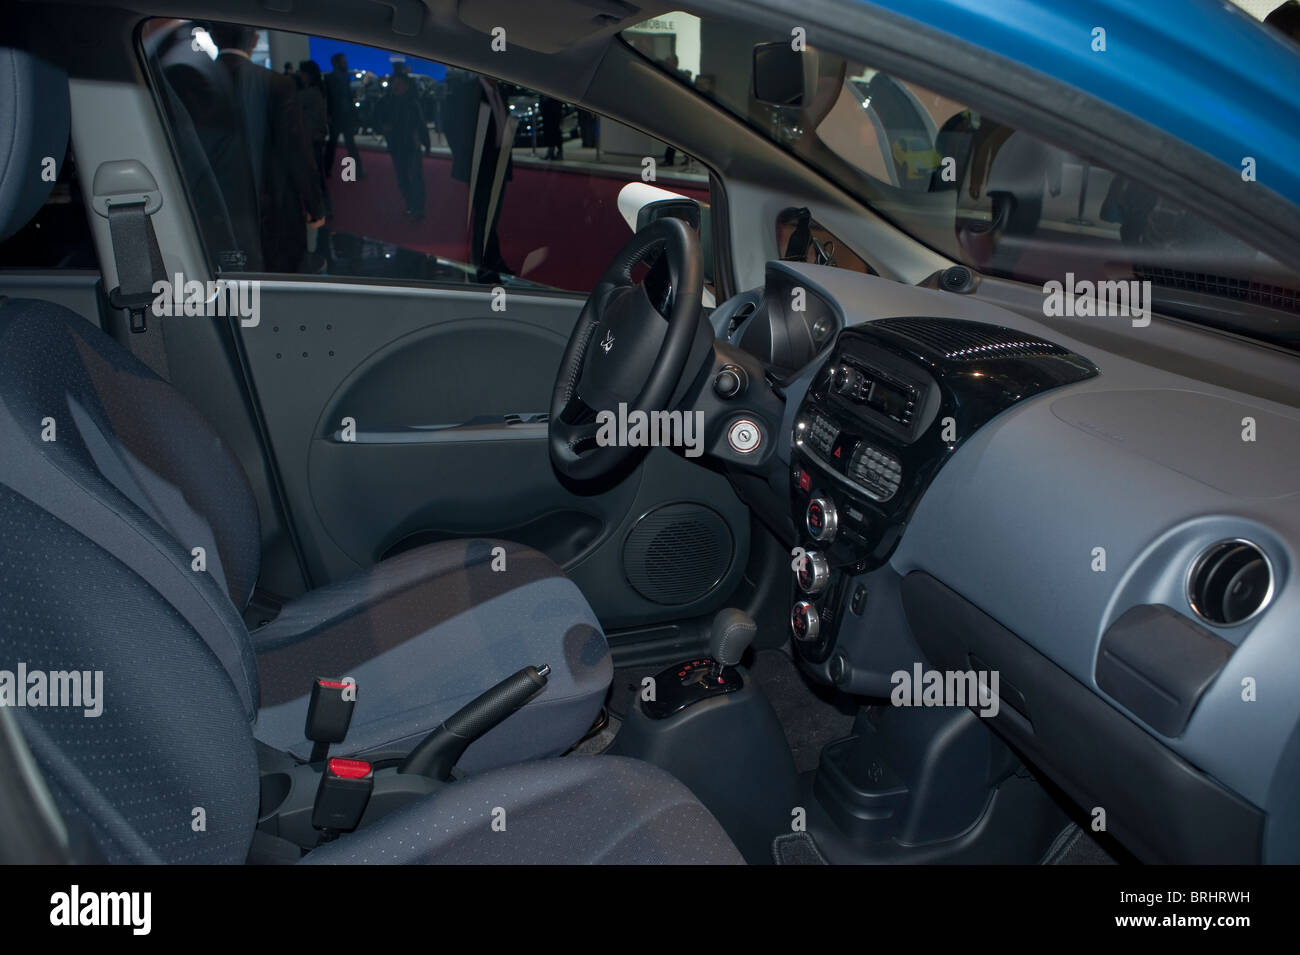 Paris, France, Paris Car Show, Electric Cars, Peugeot, Ion, detail inside Dashboard Stock Photo